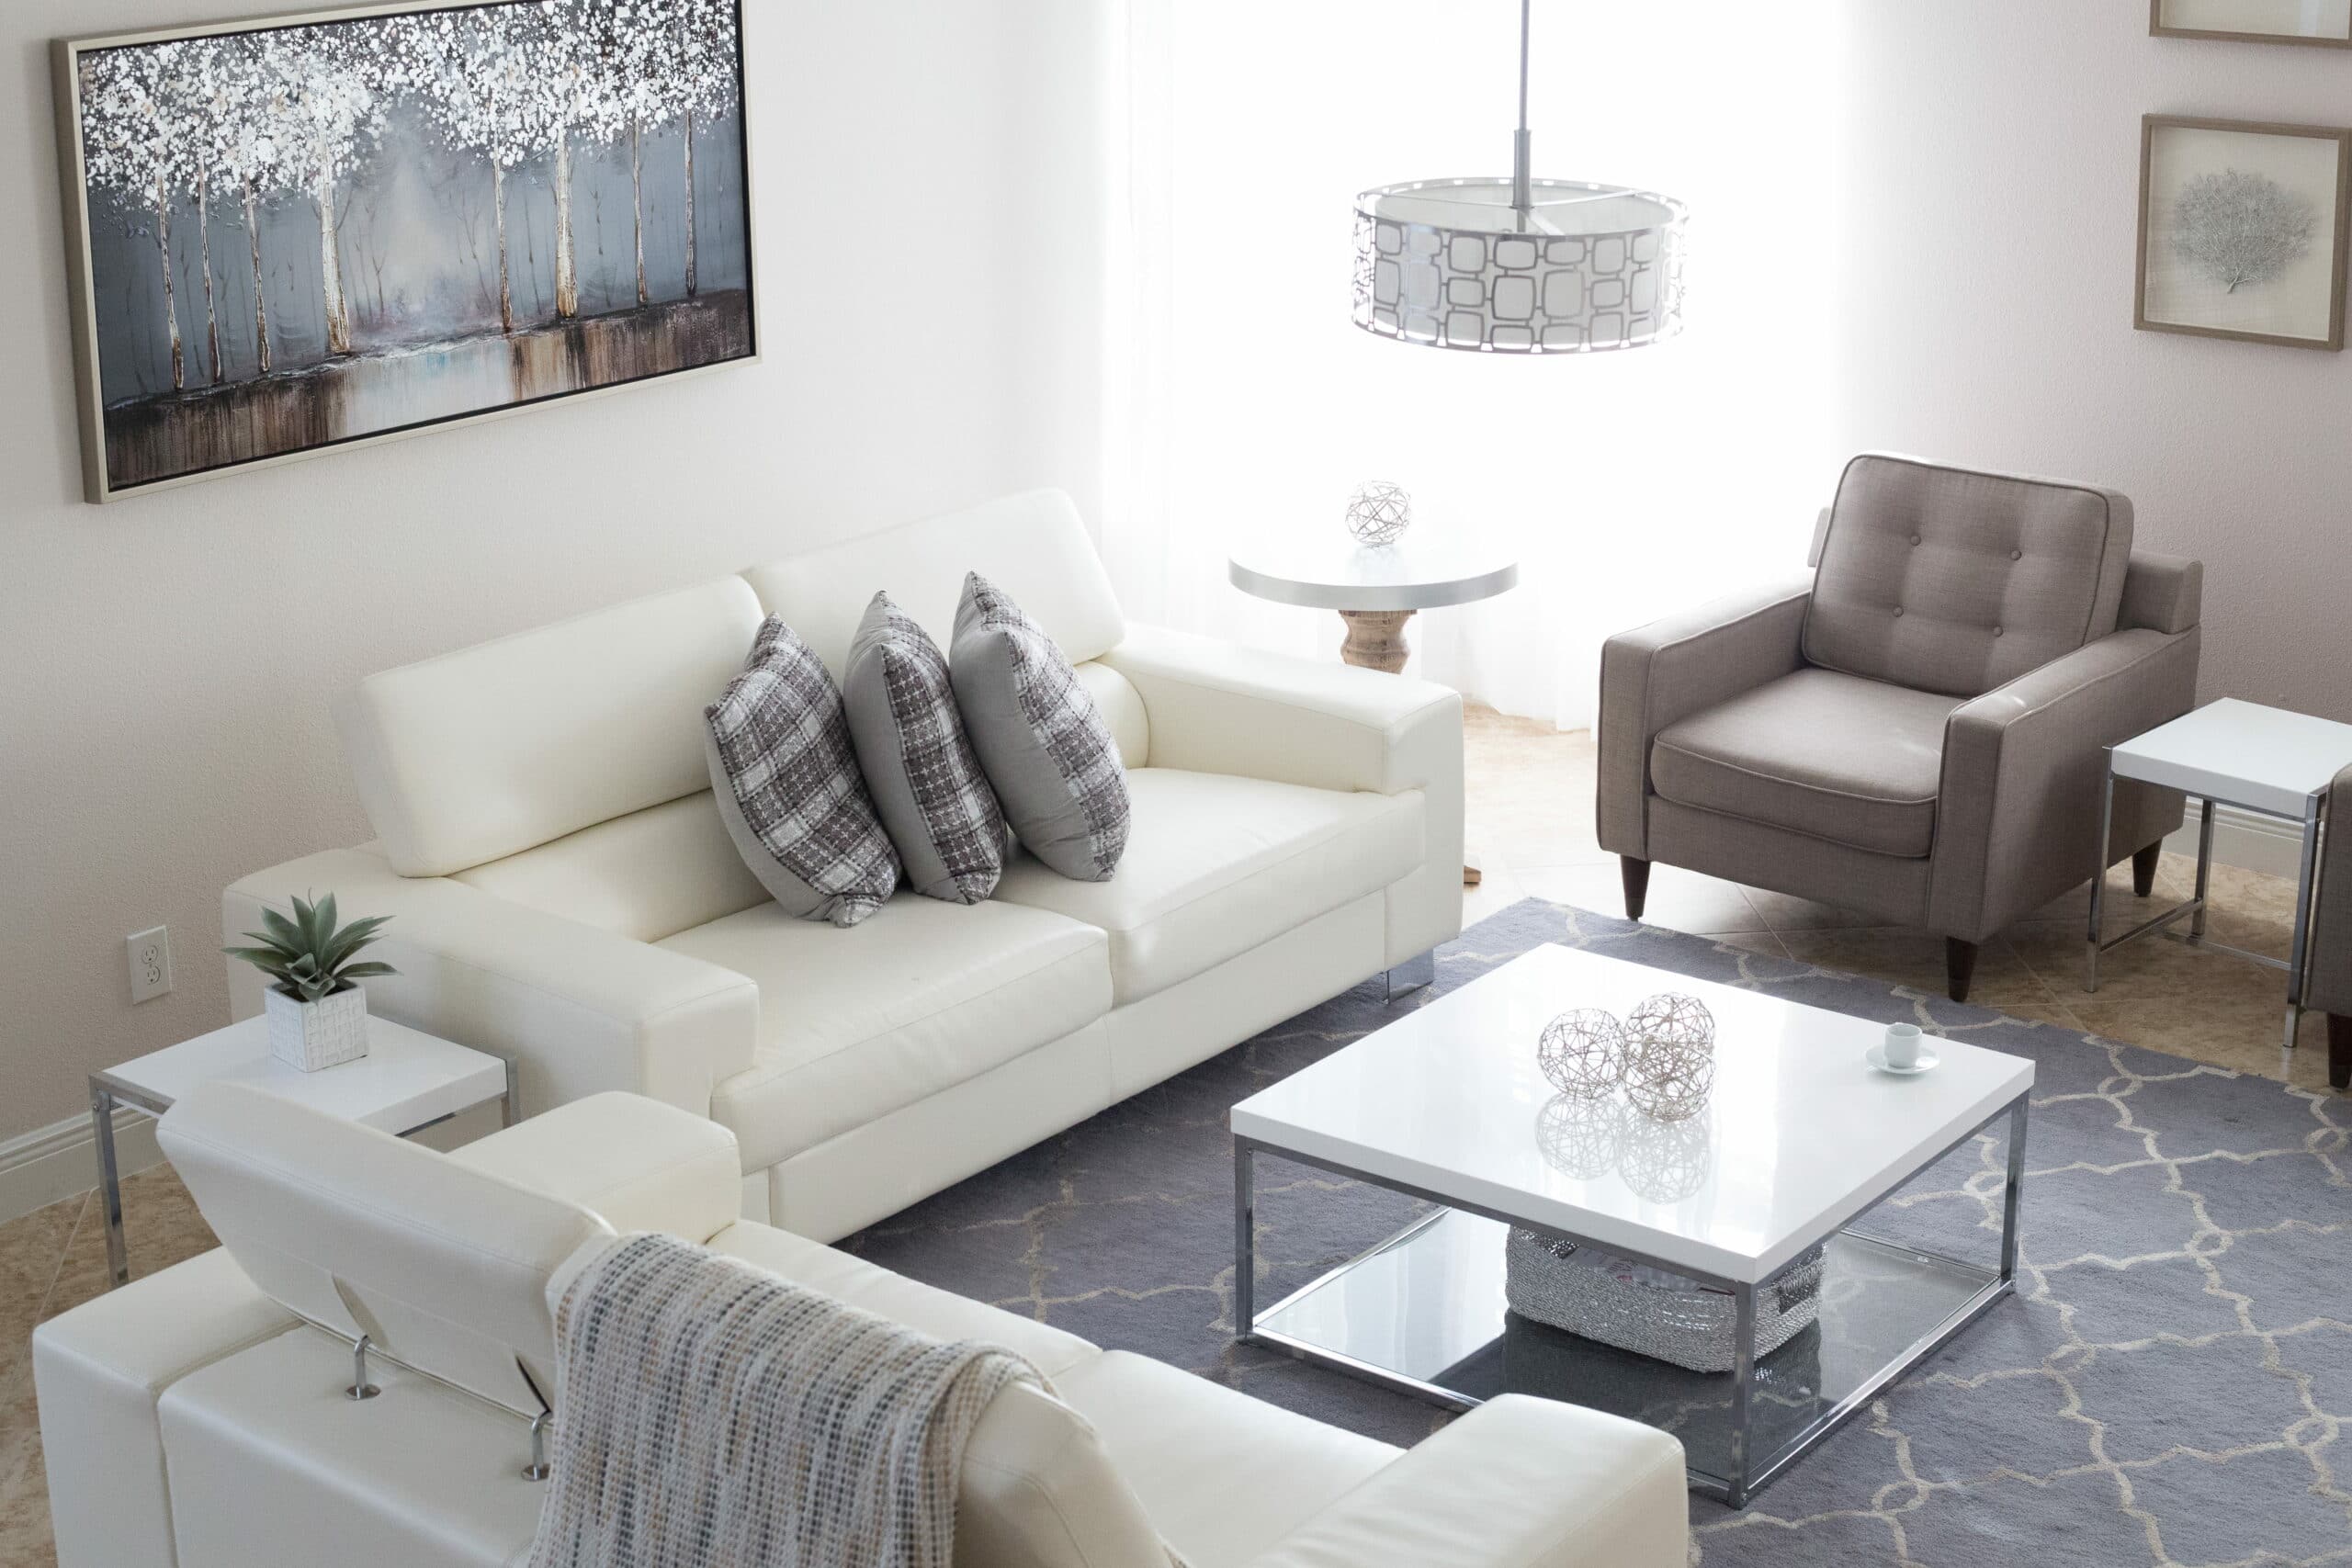 Quadro, lustre, sofás, amofadas, poltrona, tapete e mesa de centro, cinzas e brancos. Imagem do conteúdo lavar sofá centro Juazeiro.